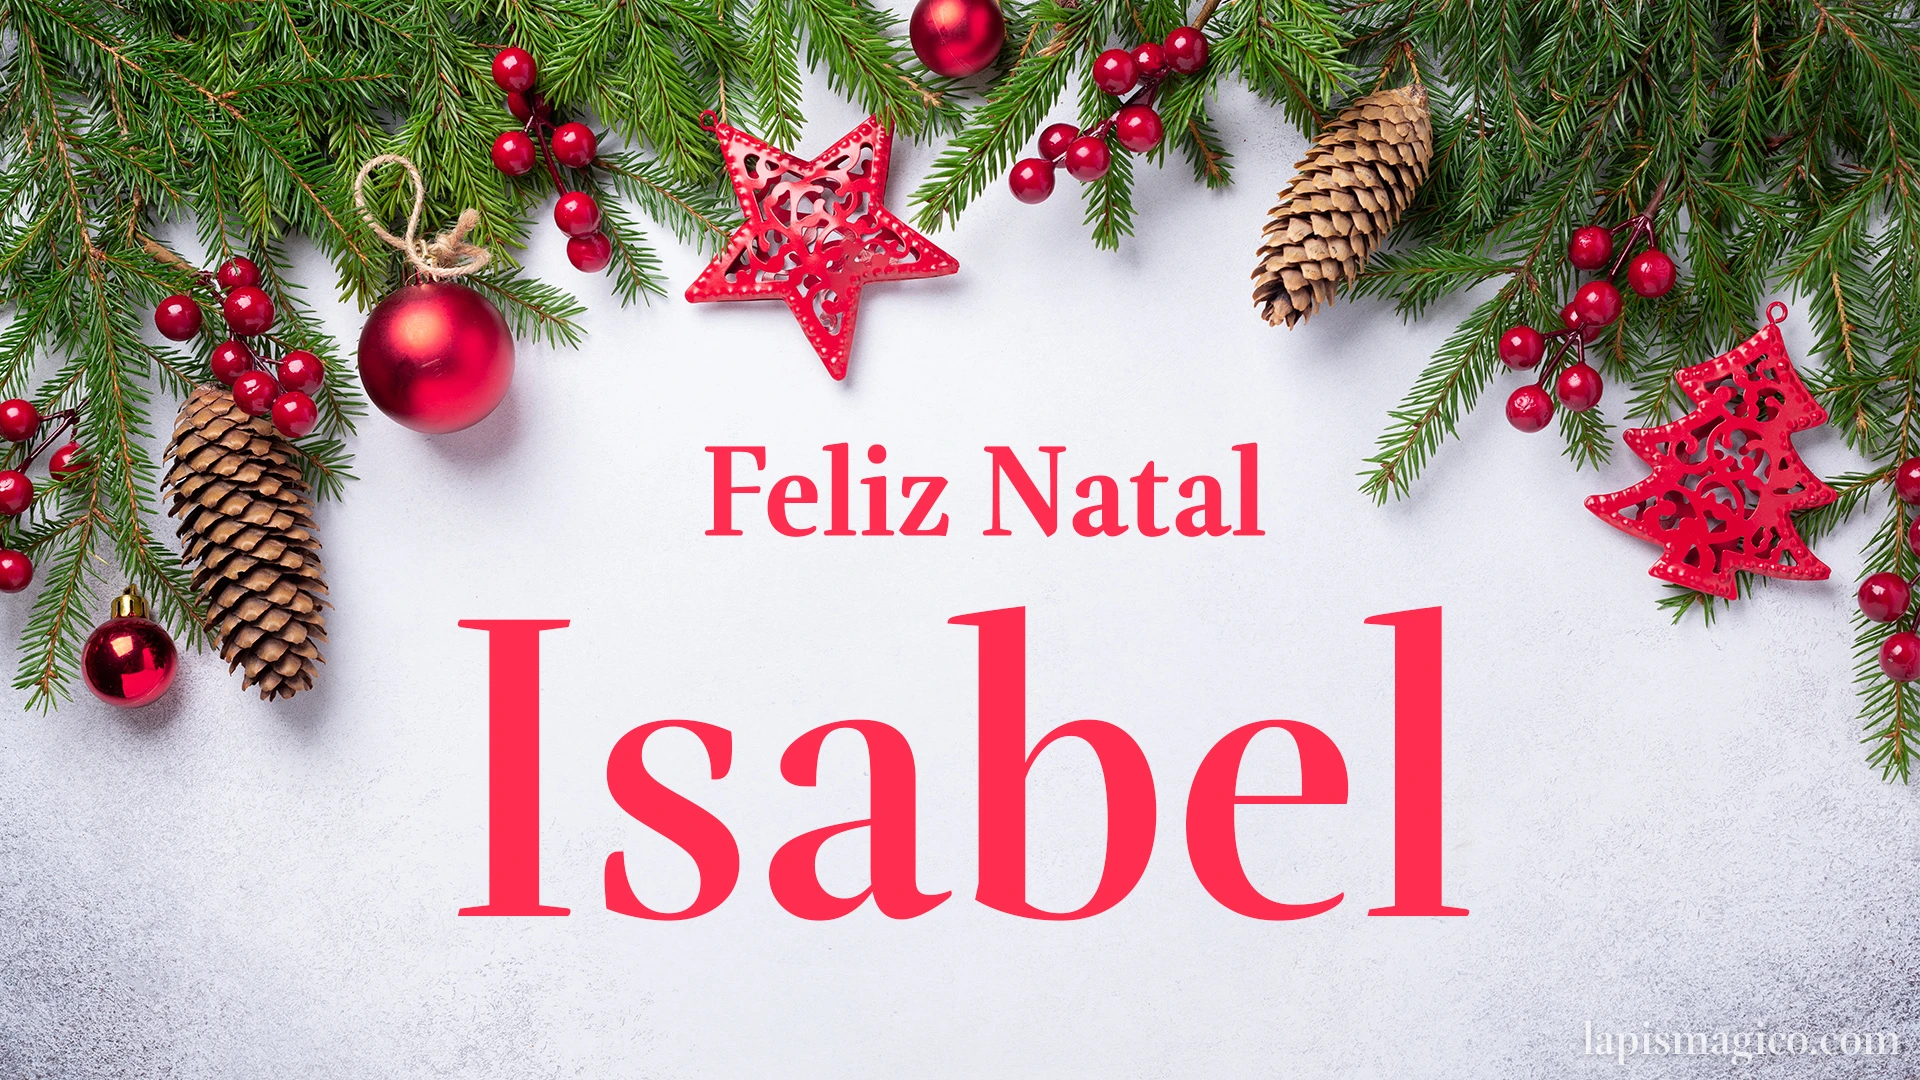 Oh Isabel, cinco postais de Feliz Natal Postal com o teu nome